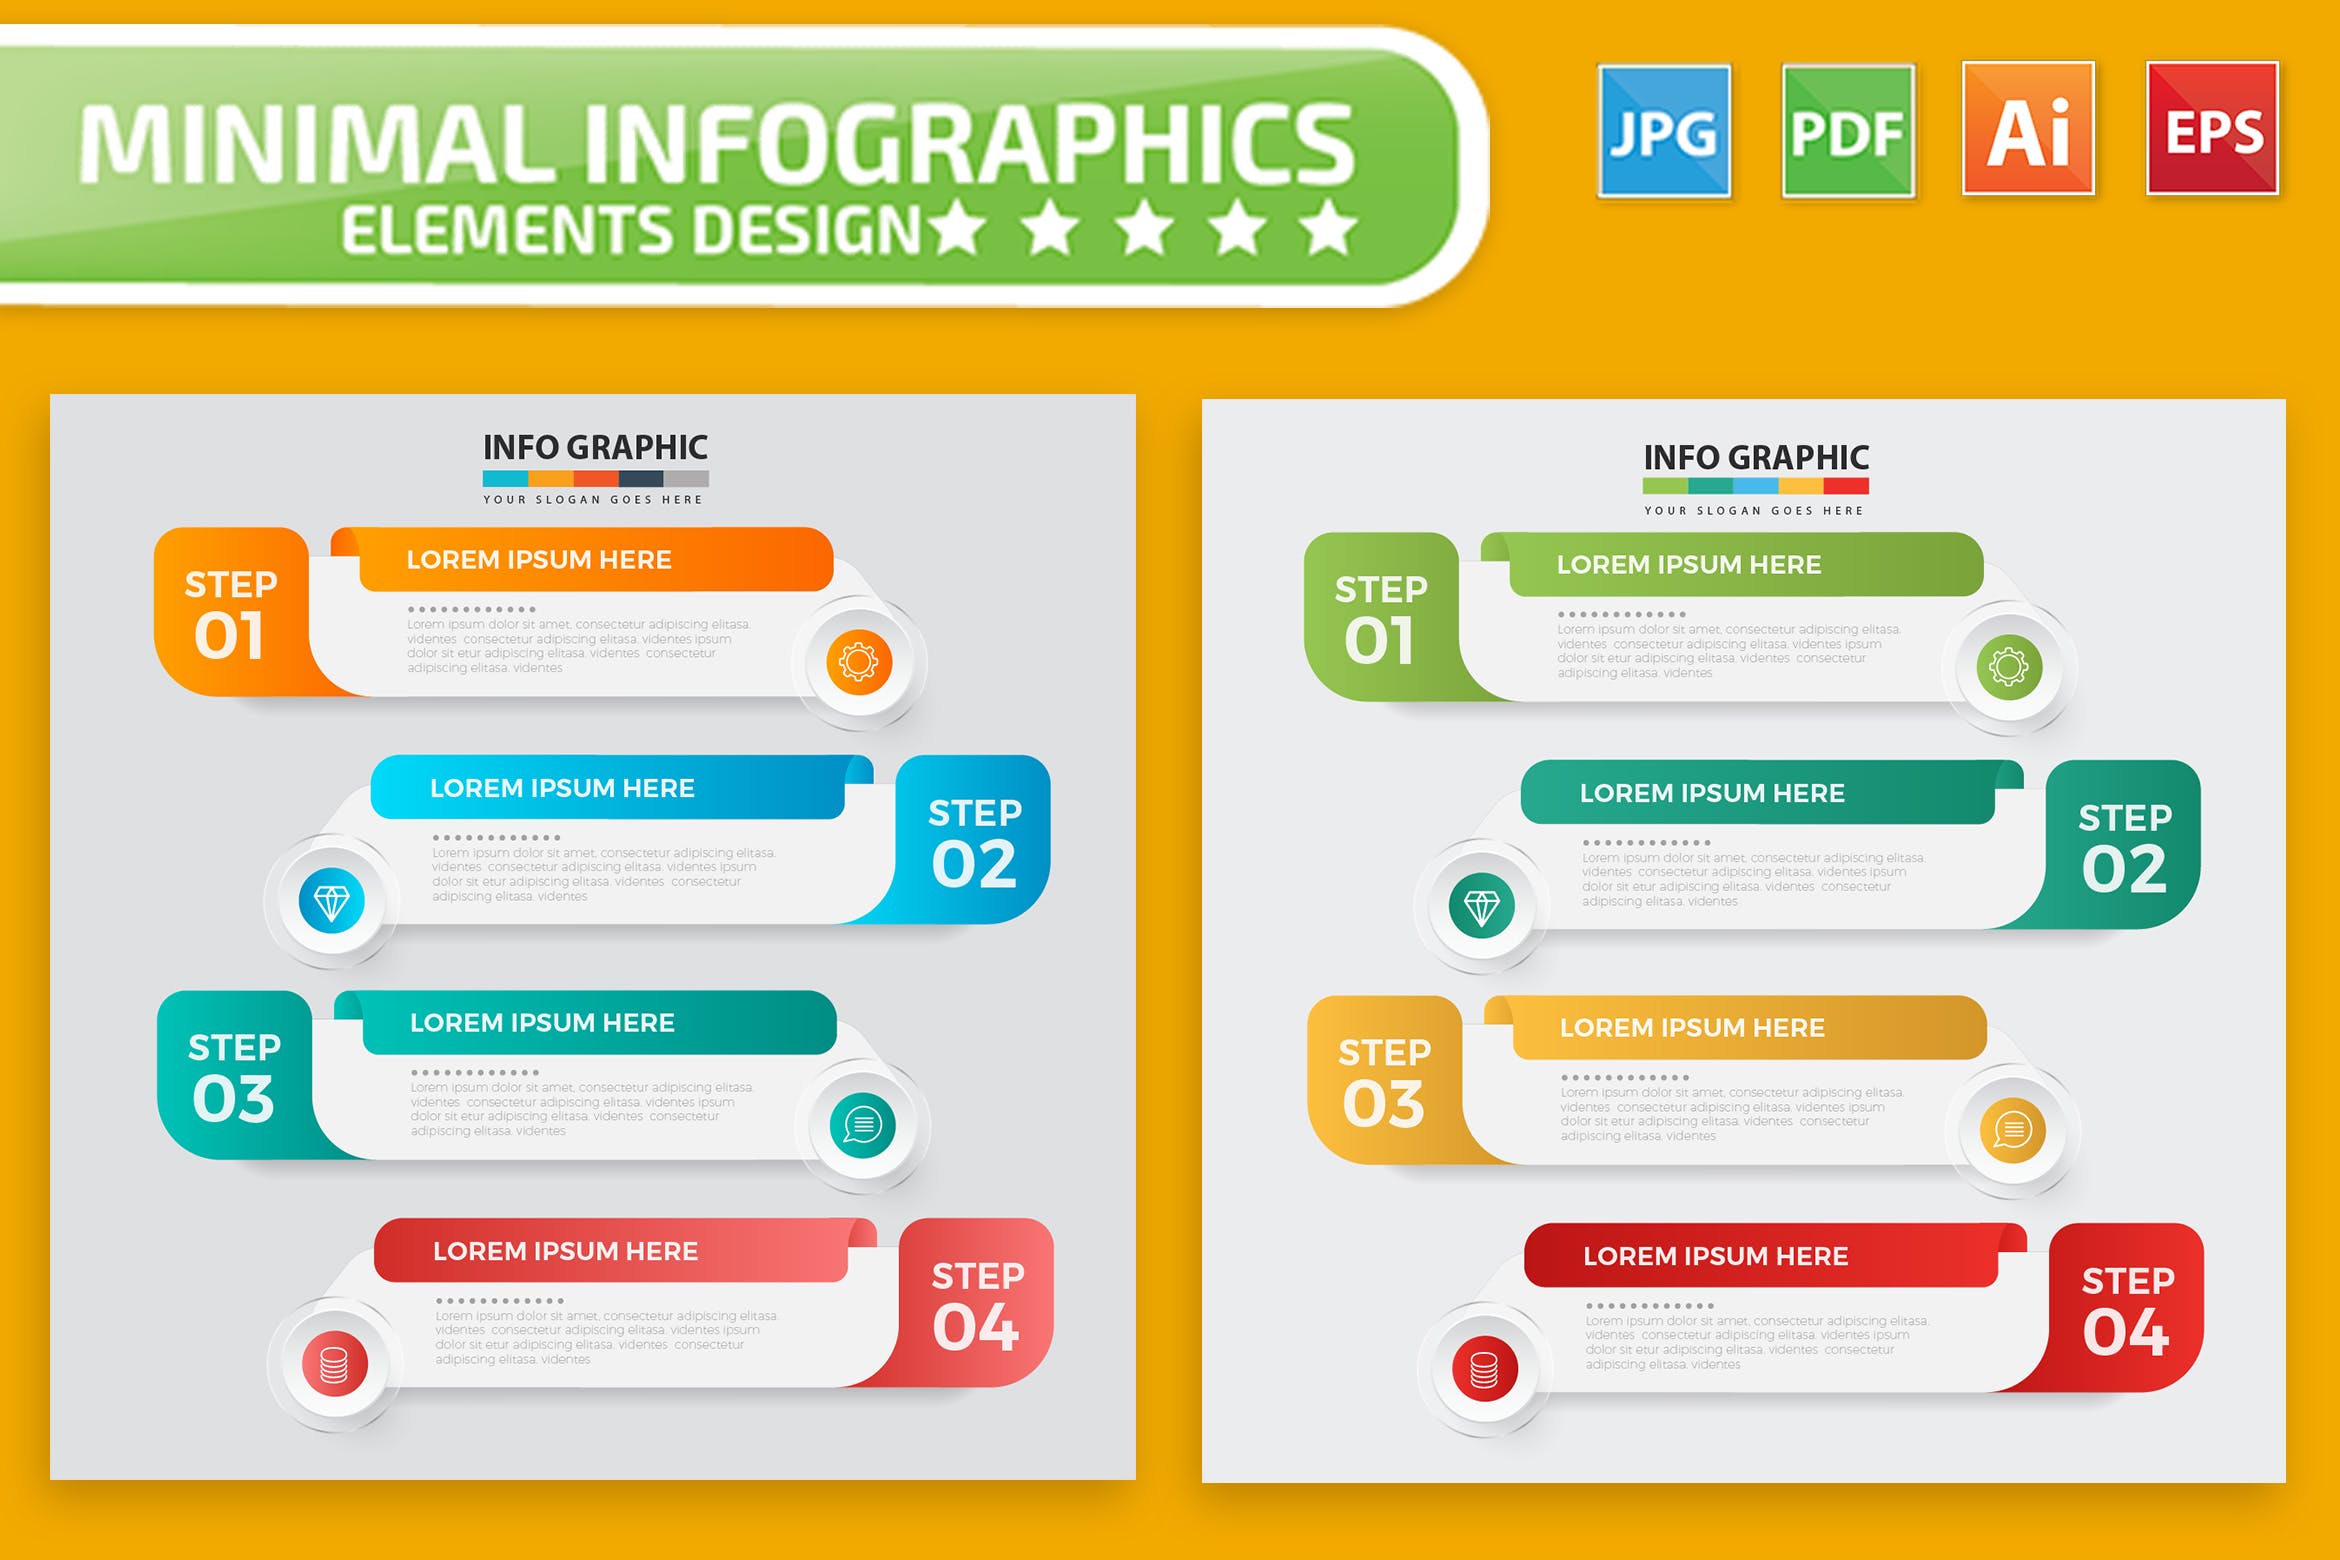 流程步骤信息图表设计矢量图形素材 Infographic Elements Design插图